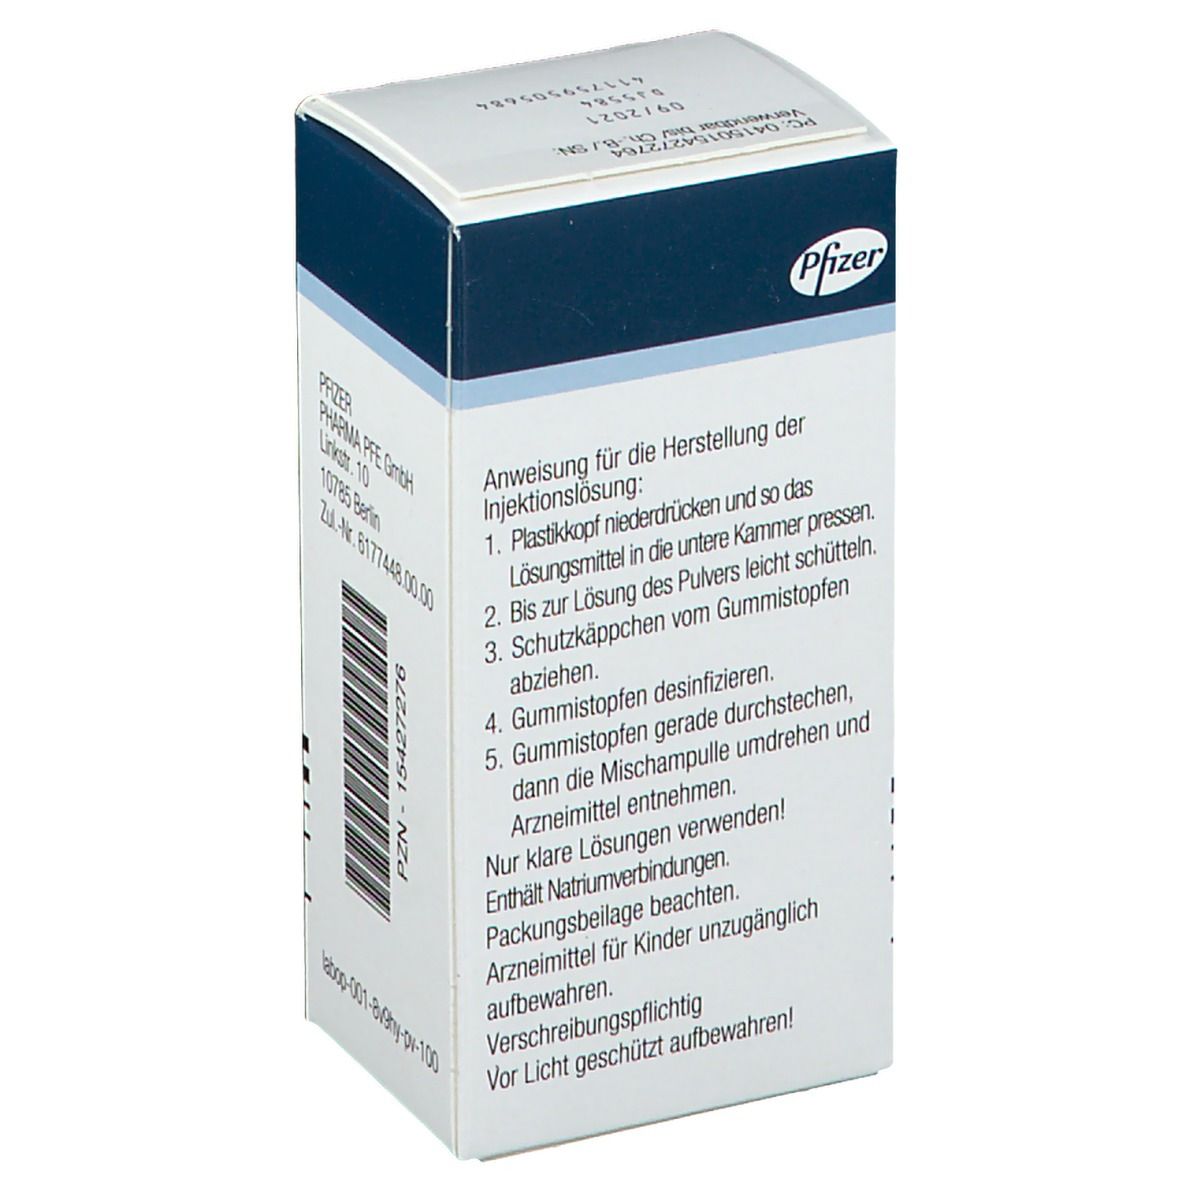 HYDROCORTISON Pfizer 100 mg sine